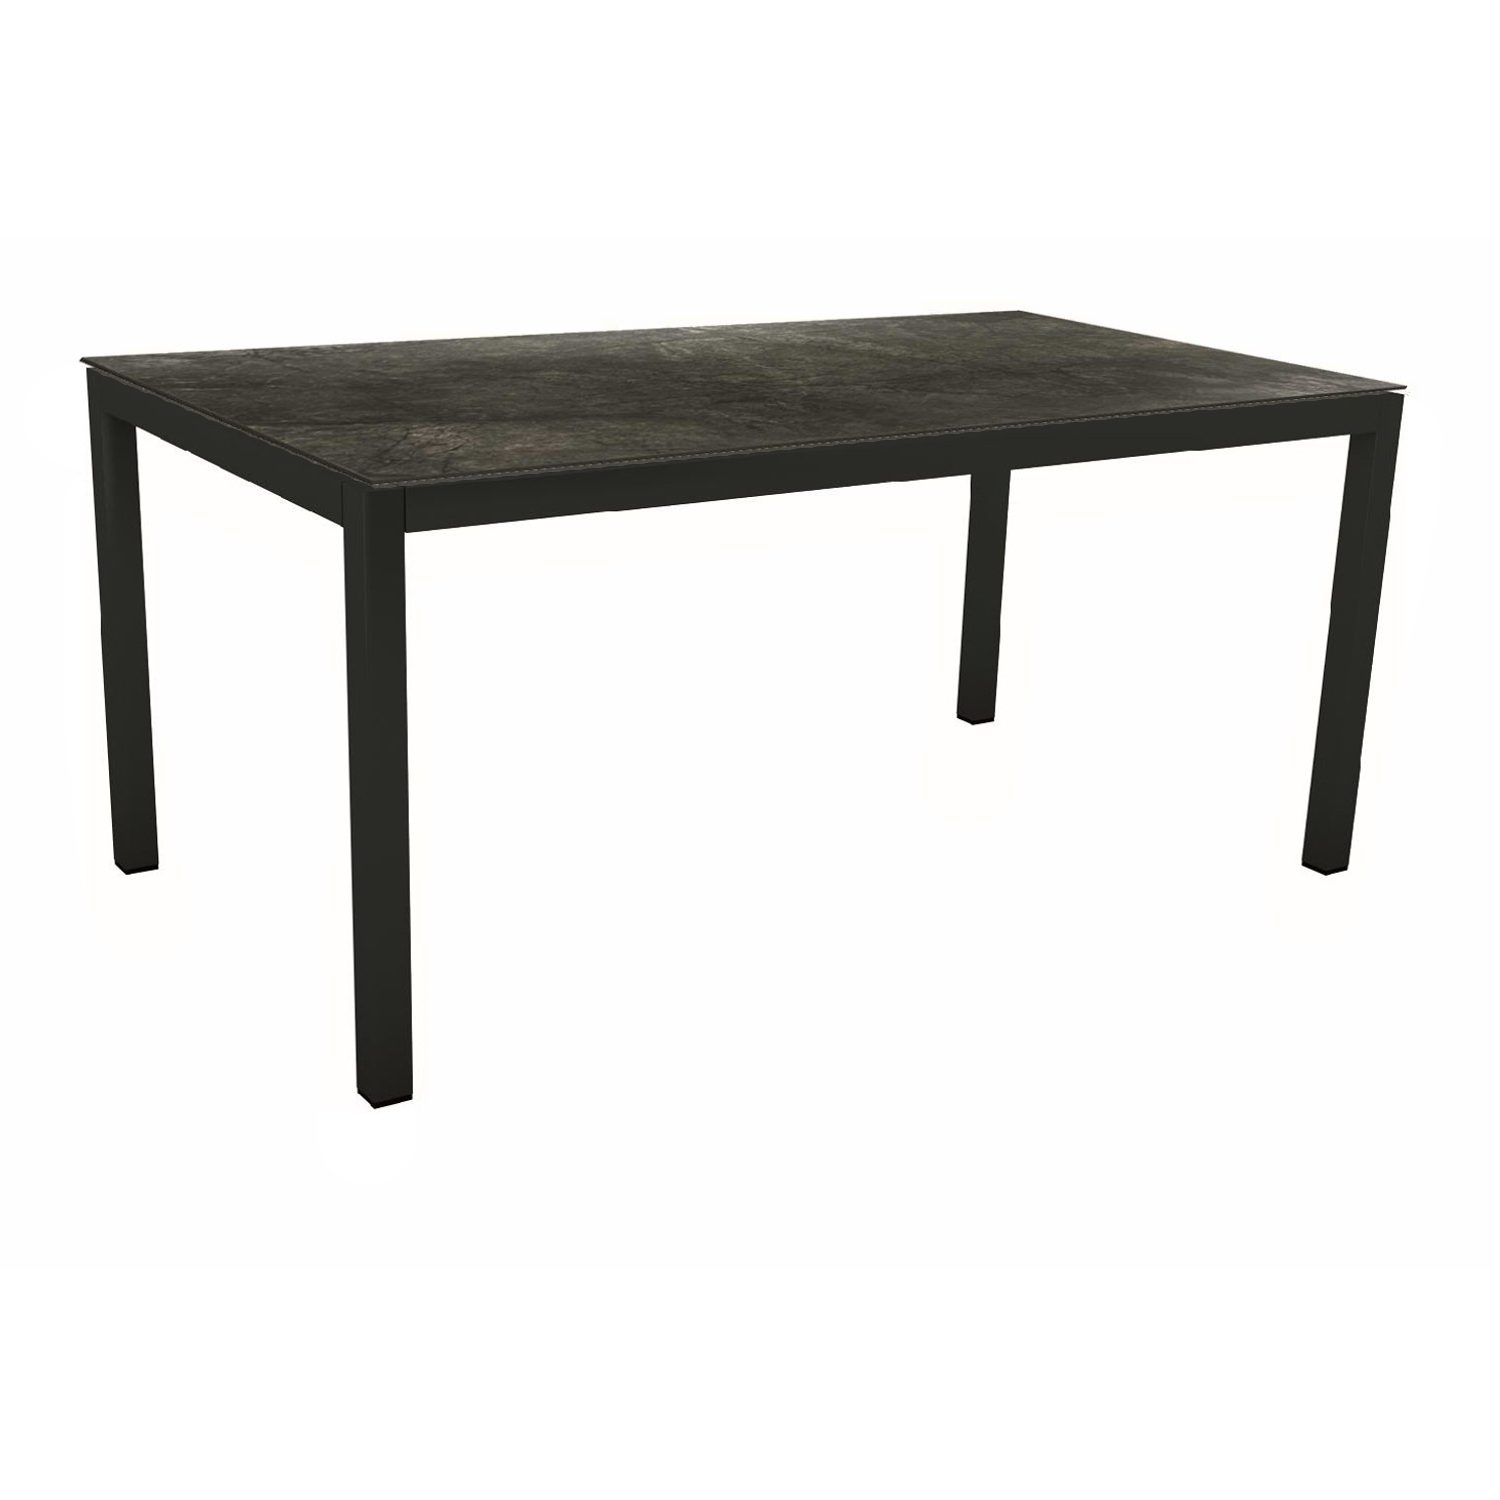 Stern Gartentisch, Gestell Aluminium schwarz matt, Tischplatte HPL Dark Marble, 160x90 cm